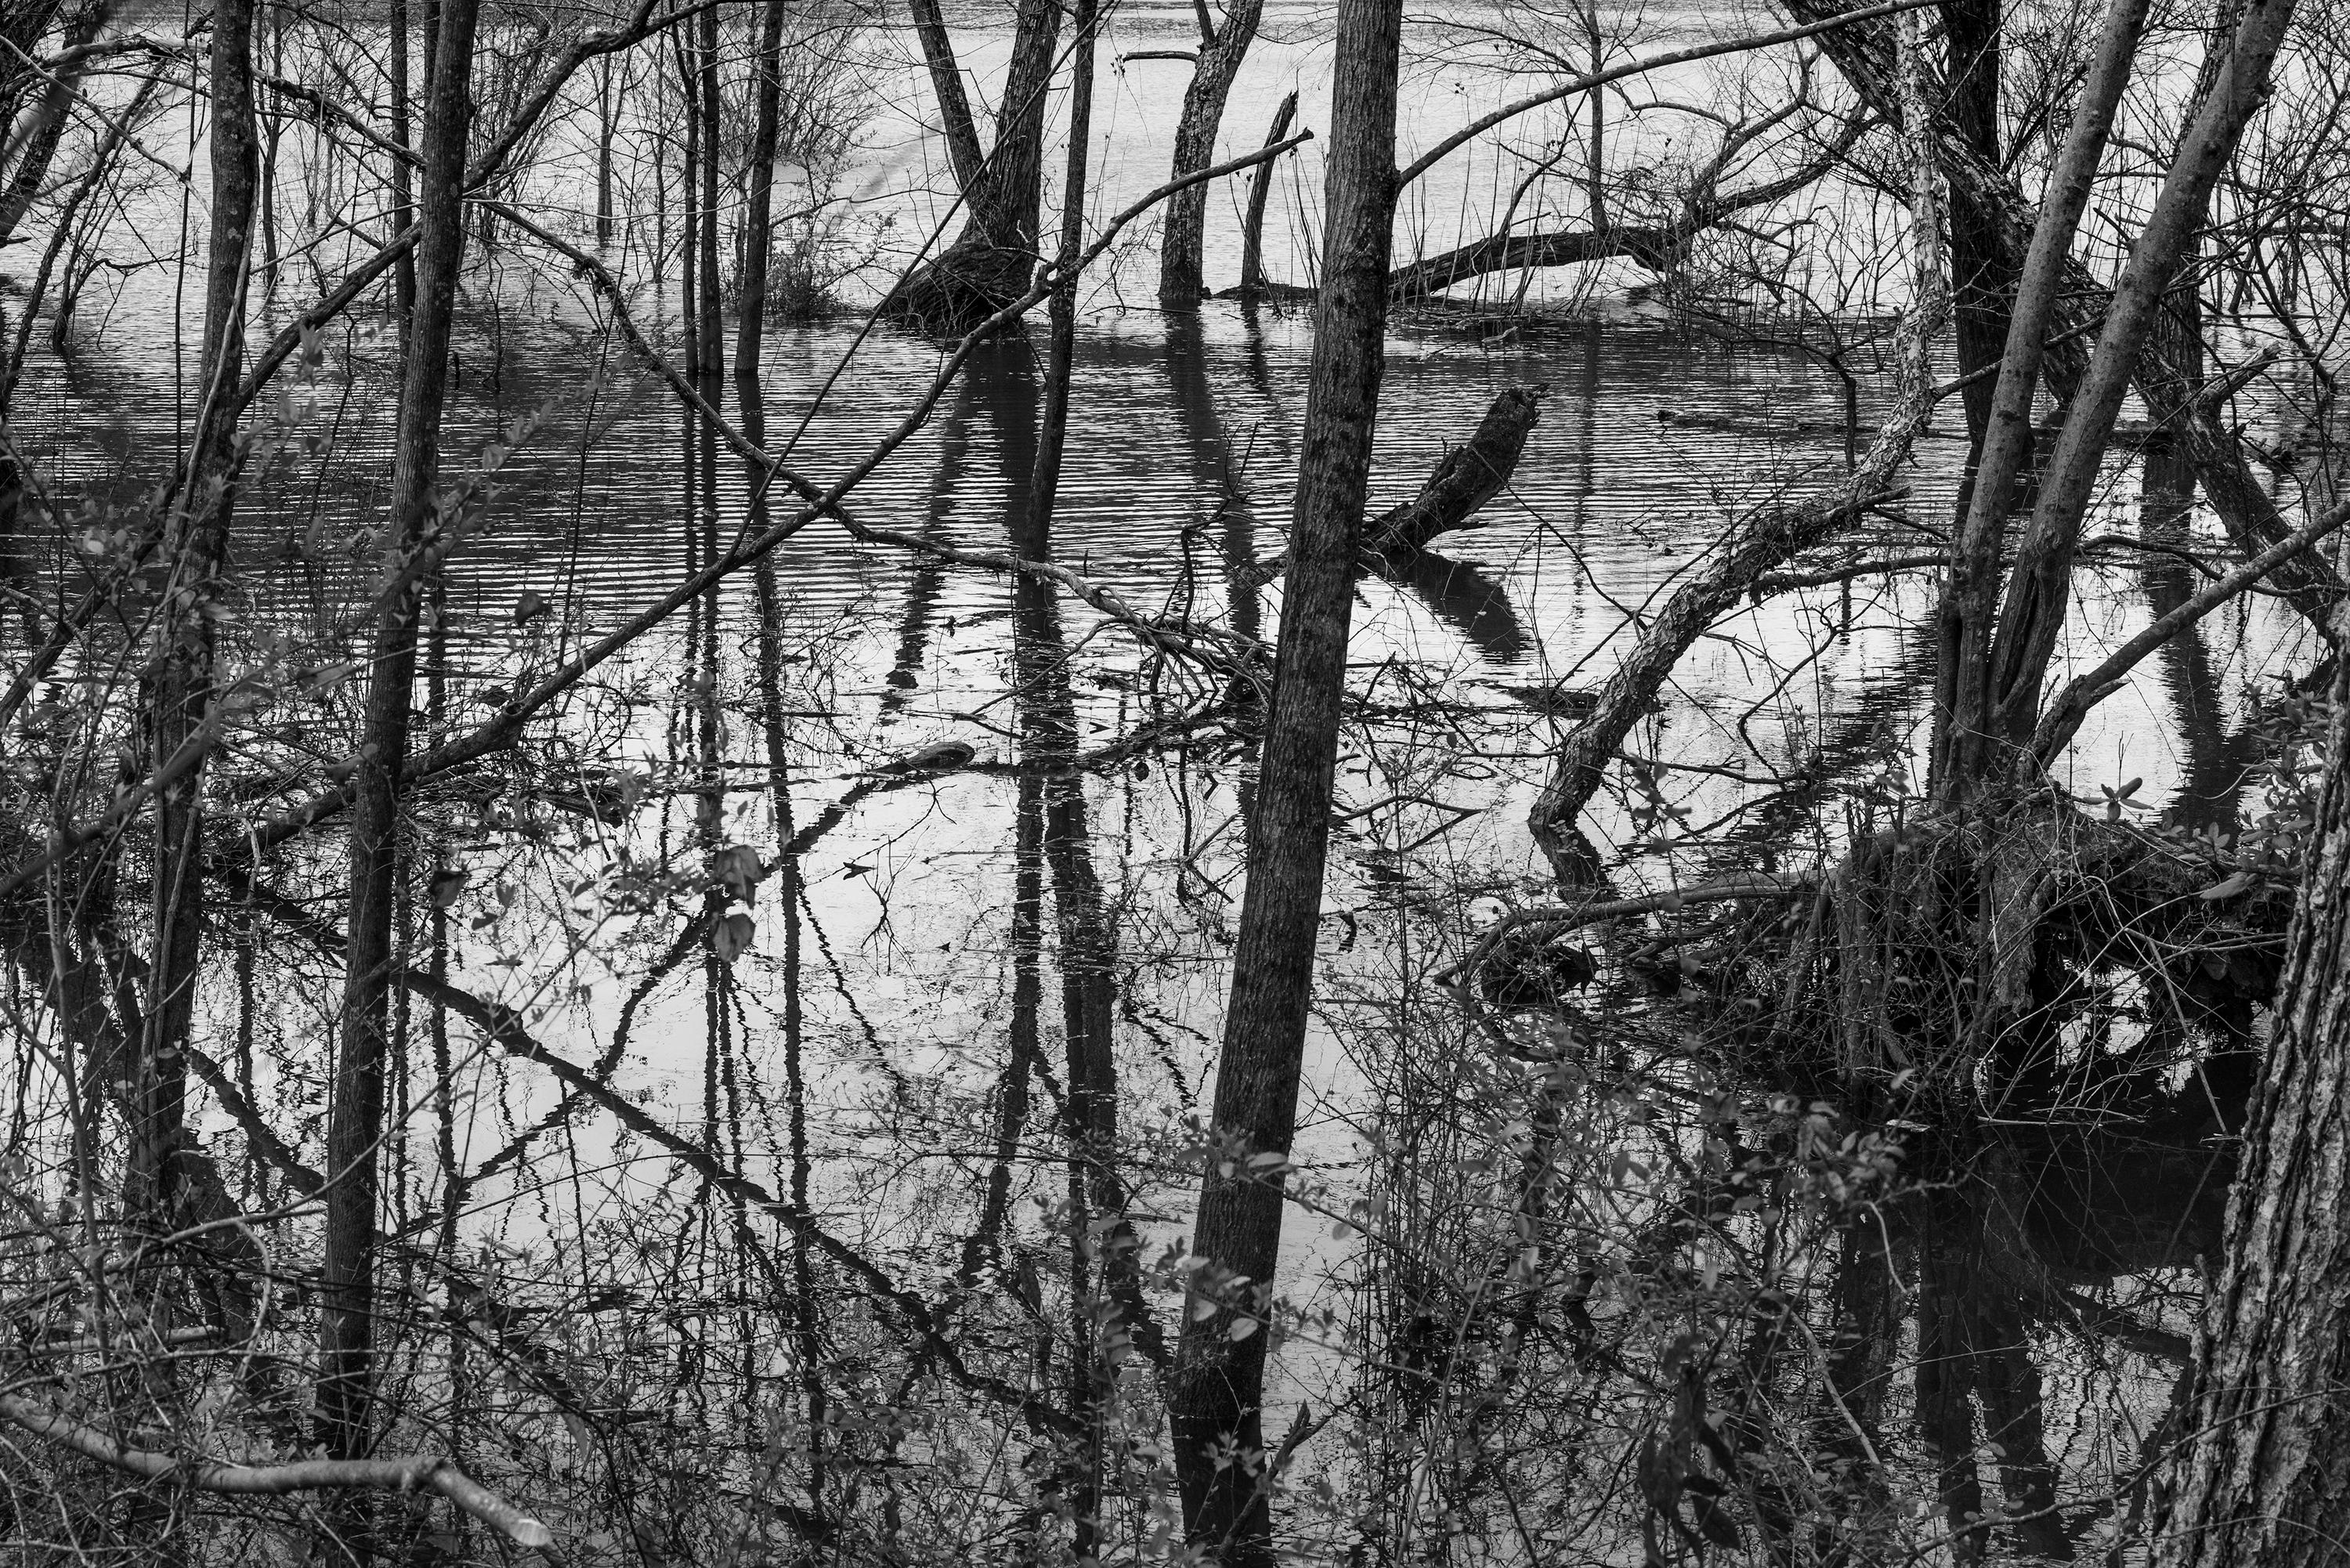 Richard Skoonberg Black and White Photograph - 'Rising Water' - Black and White - Landscape Photography - Eliot Porter